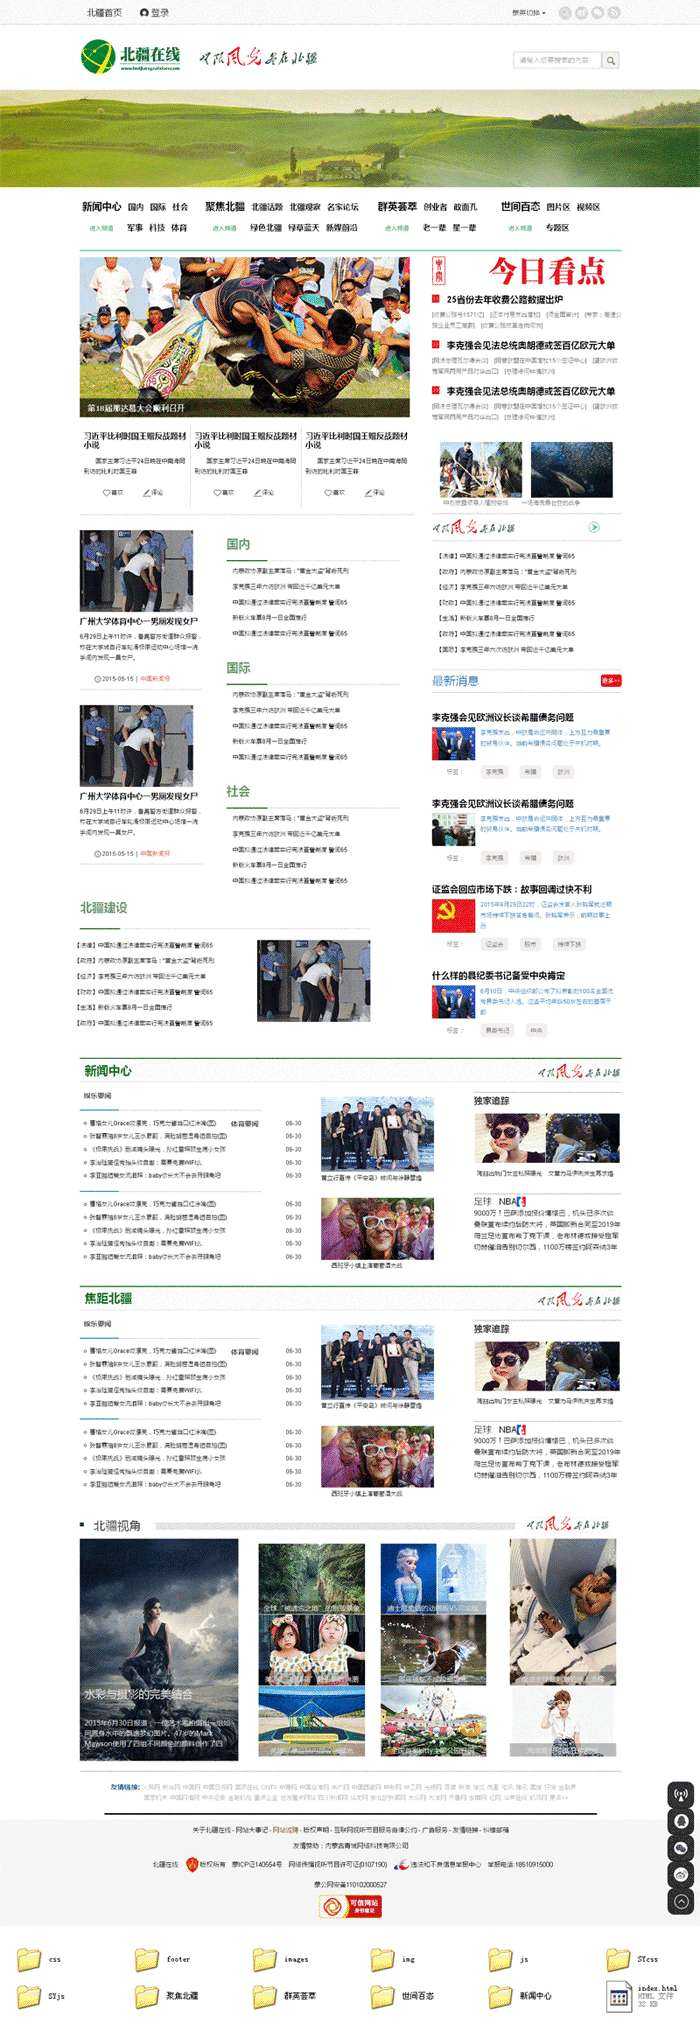 北疆在线新闻资讯网站模板html整站